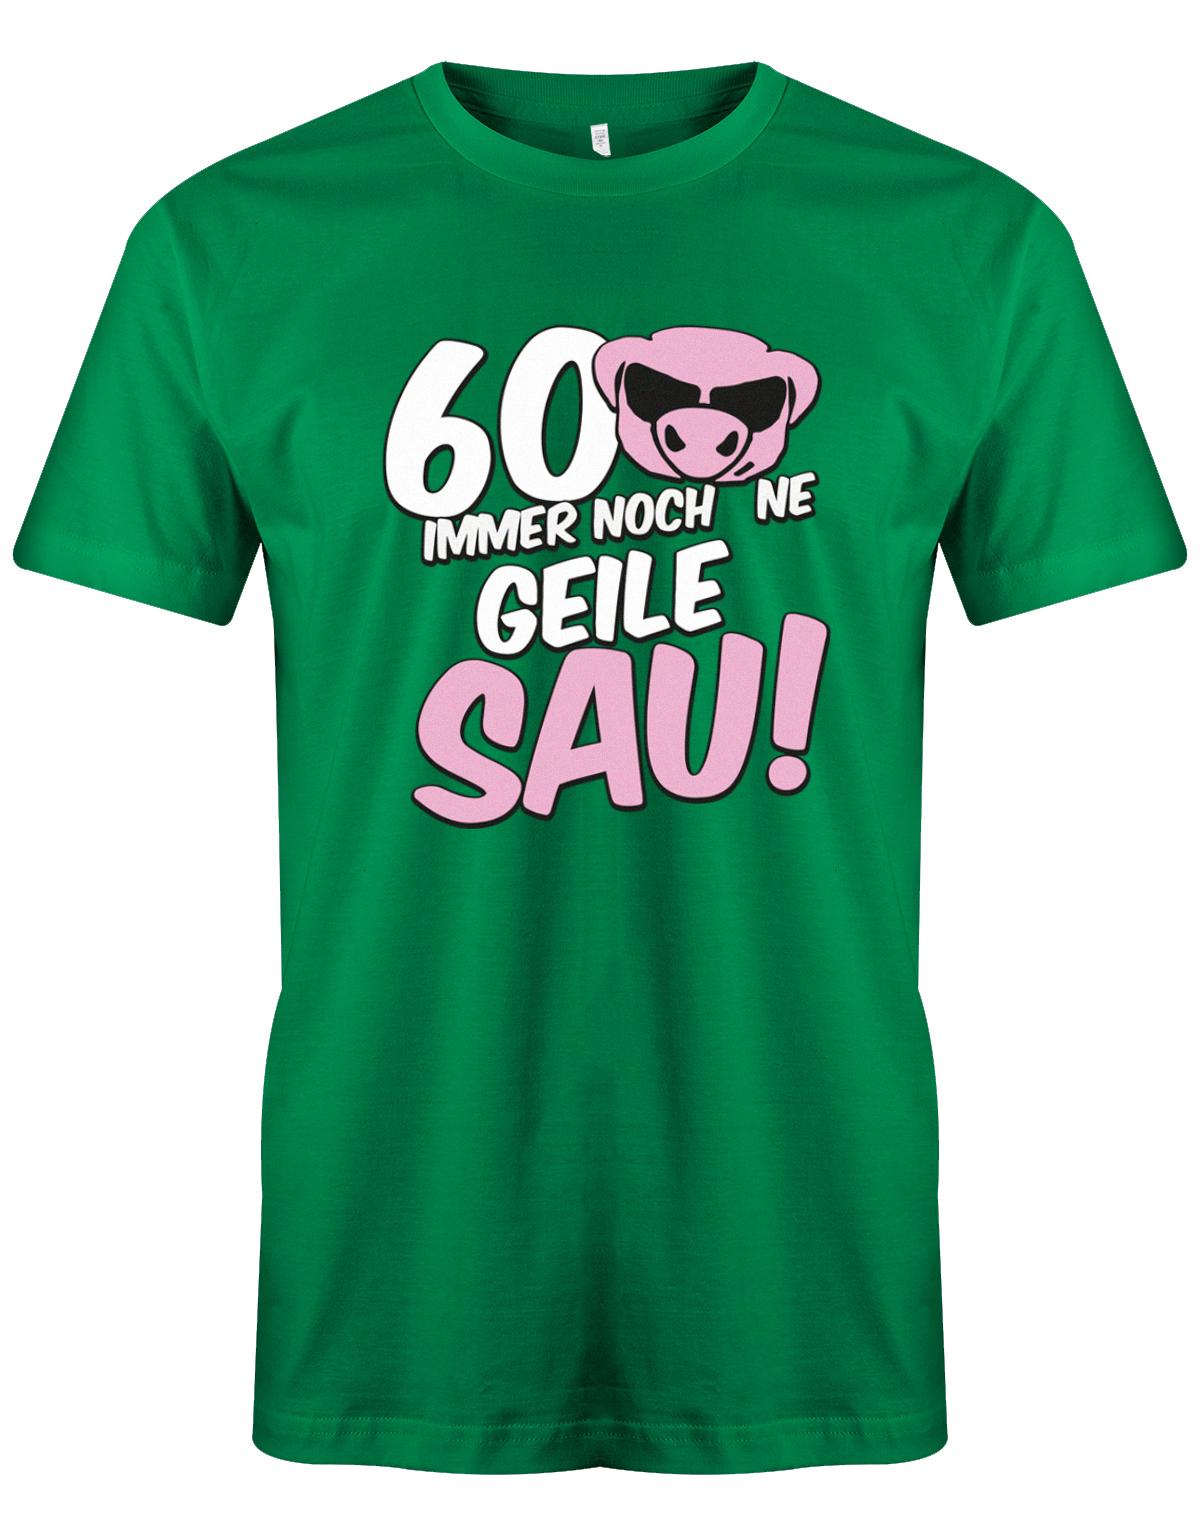 Lustiges T-Shirt zum 60 Geburtstag für den Mann Bedruckt mit 60 Immer noch 'ne geile Sau! Sau mit Sonnenbrille grün